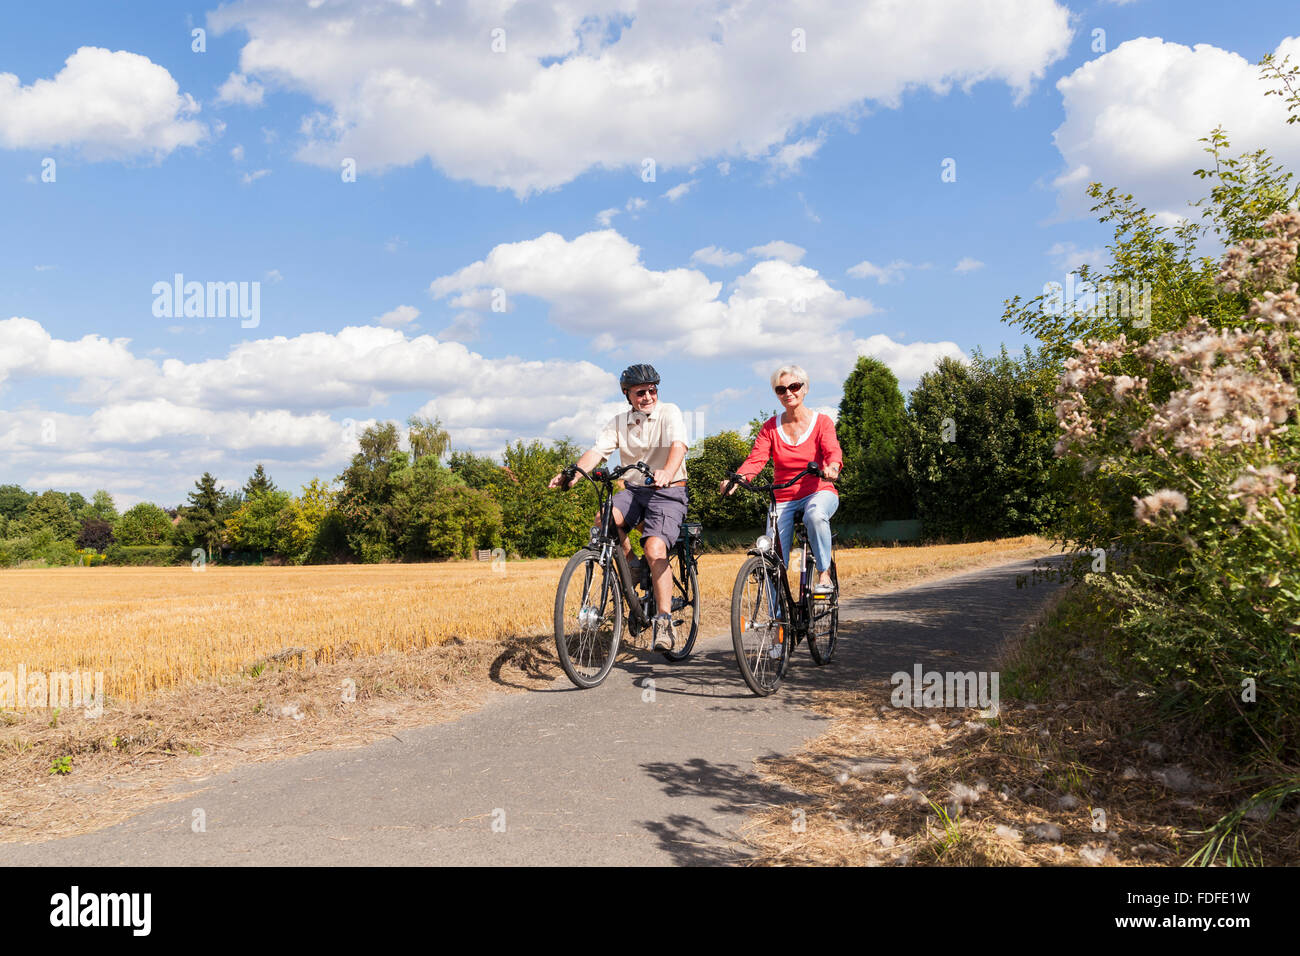 Personas mayores activas atractivo viaje en bicicleta en primavera verano otoño otoño Foto de stock